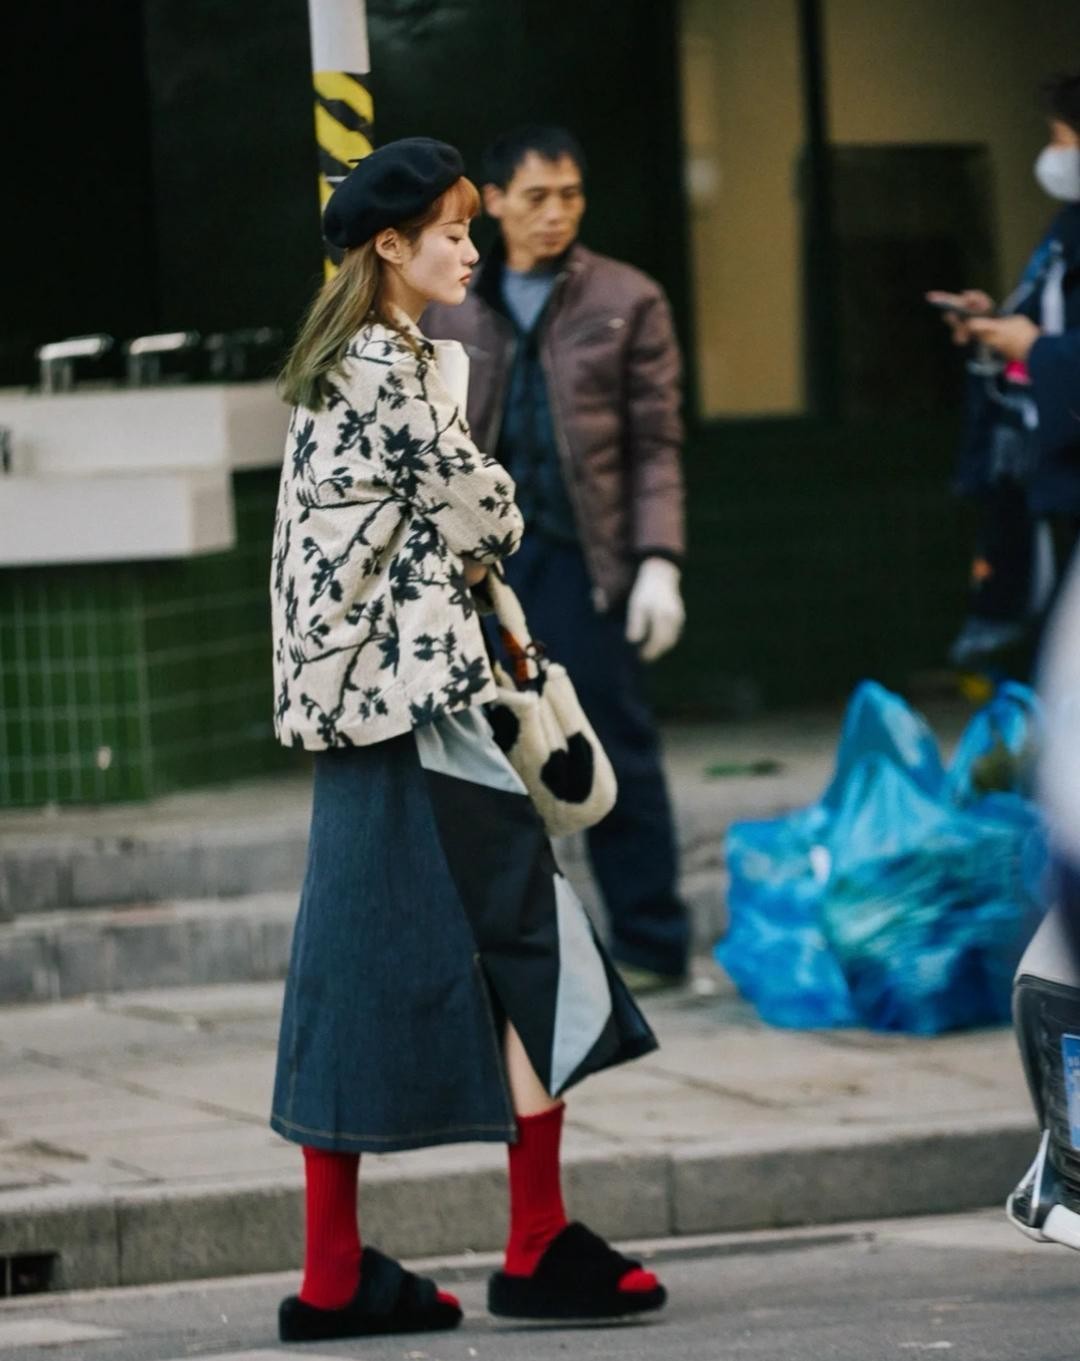 上海的女人都这么贵气吗？穿加绒的外套温柔还大方，特别的时髦